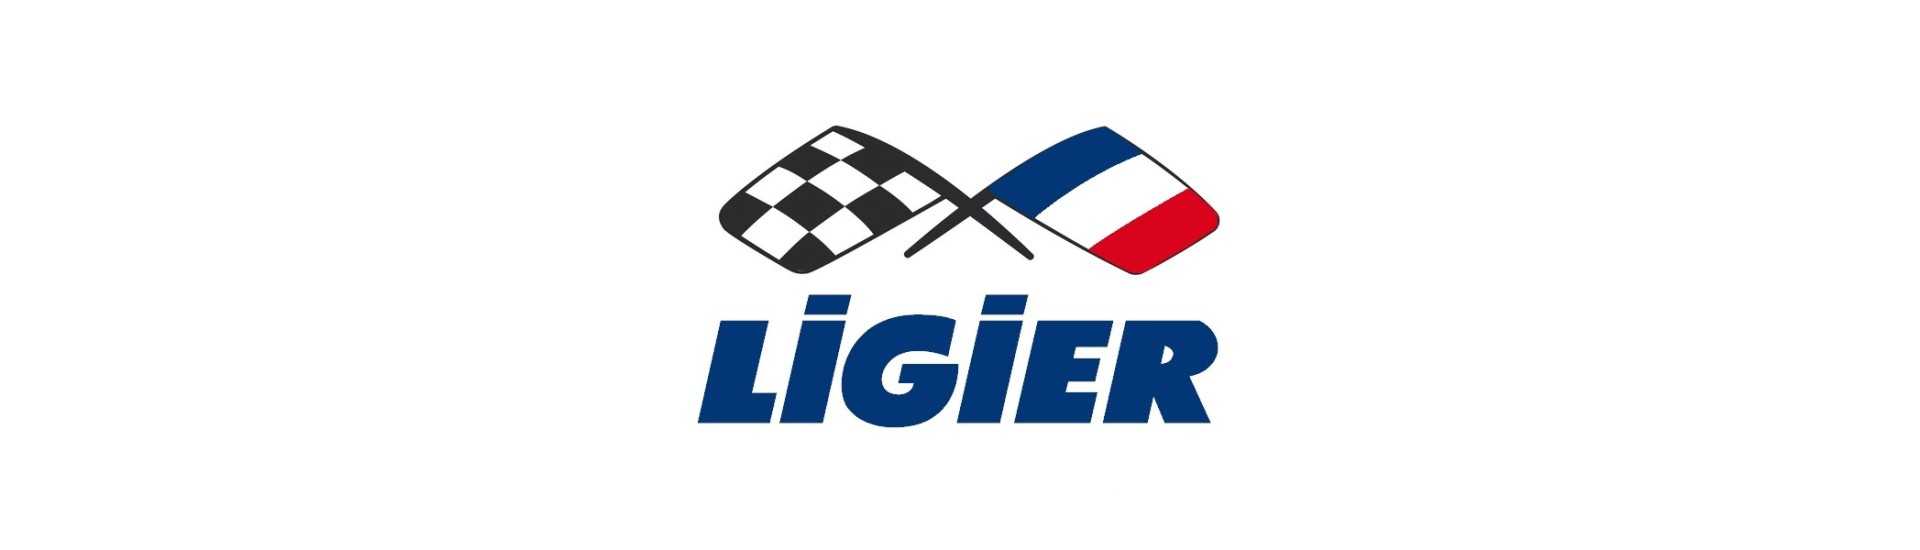 Bagagetrim till bästa pris för en bil utan körkort Ligier